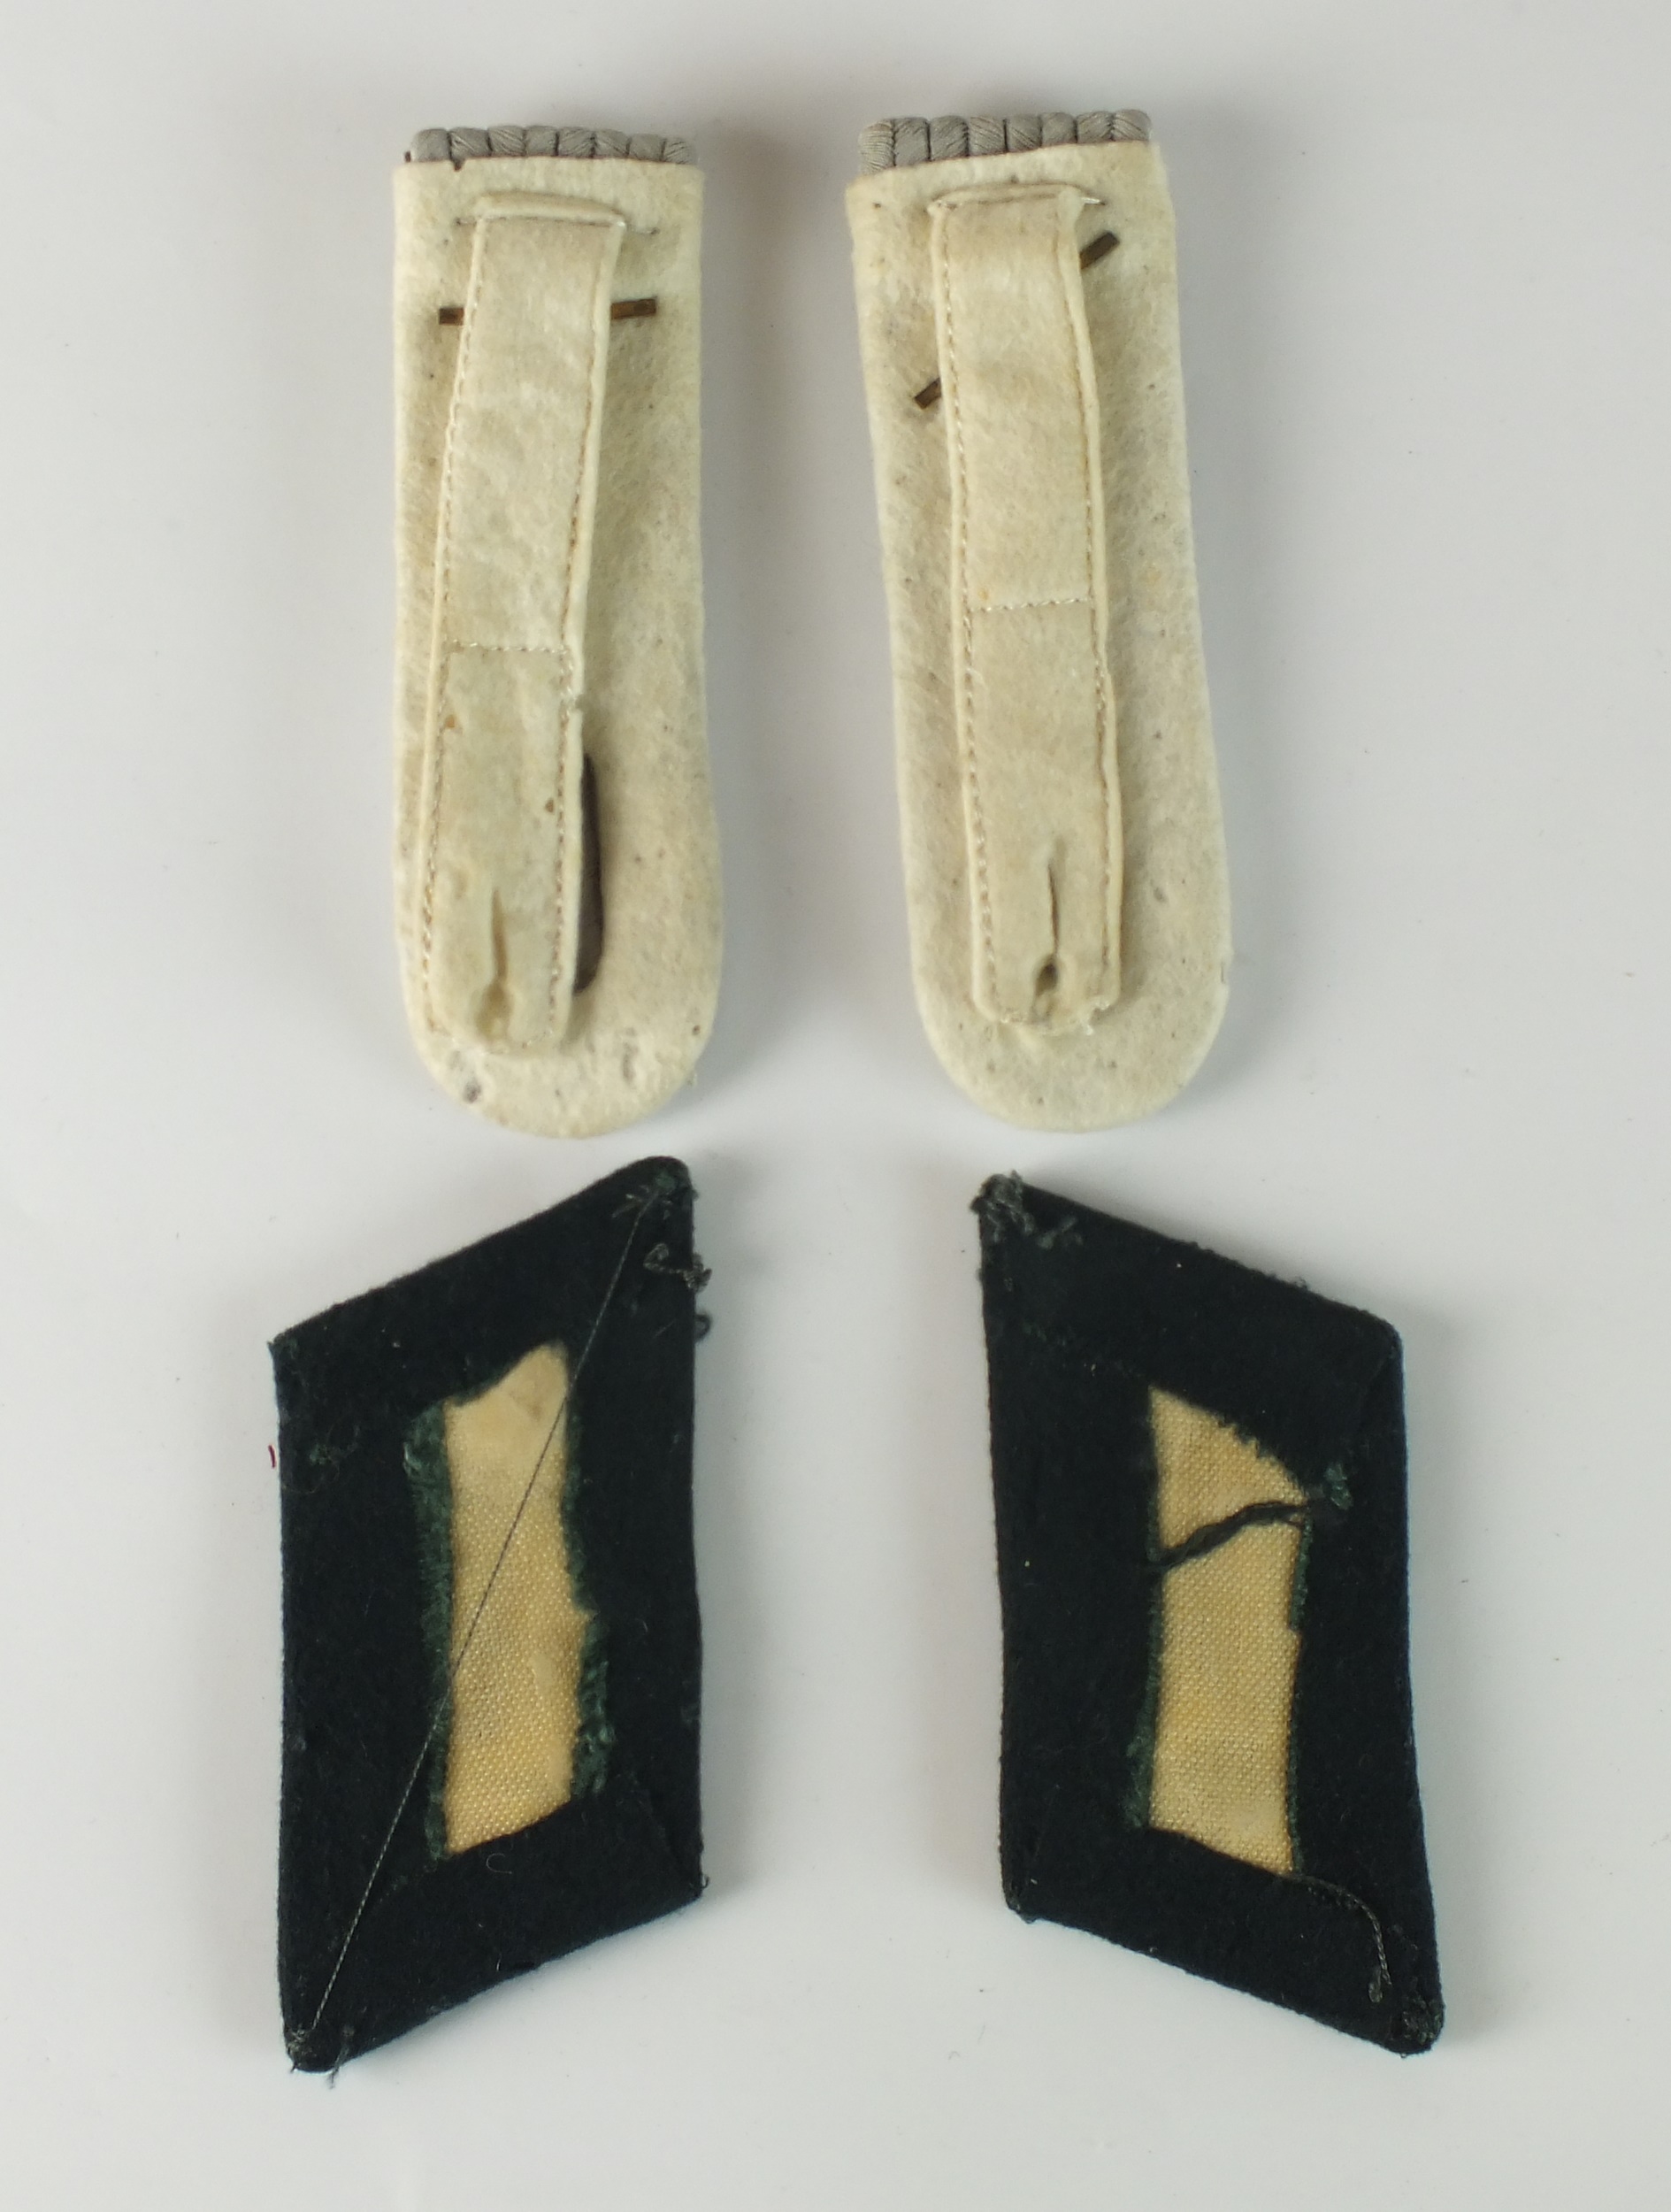 Set of German Infantry Officer collar tabs and shoulder boards - Image 2 of 2